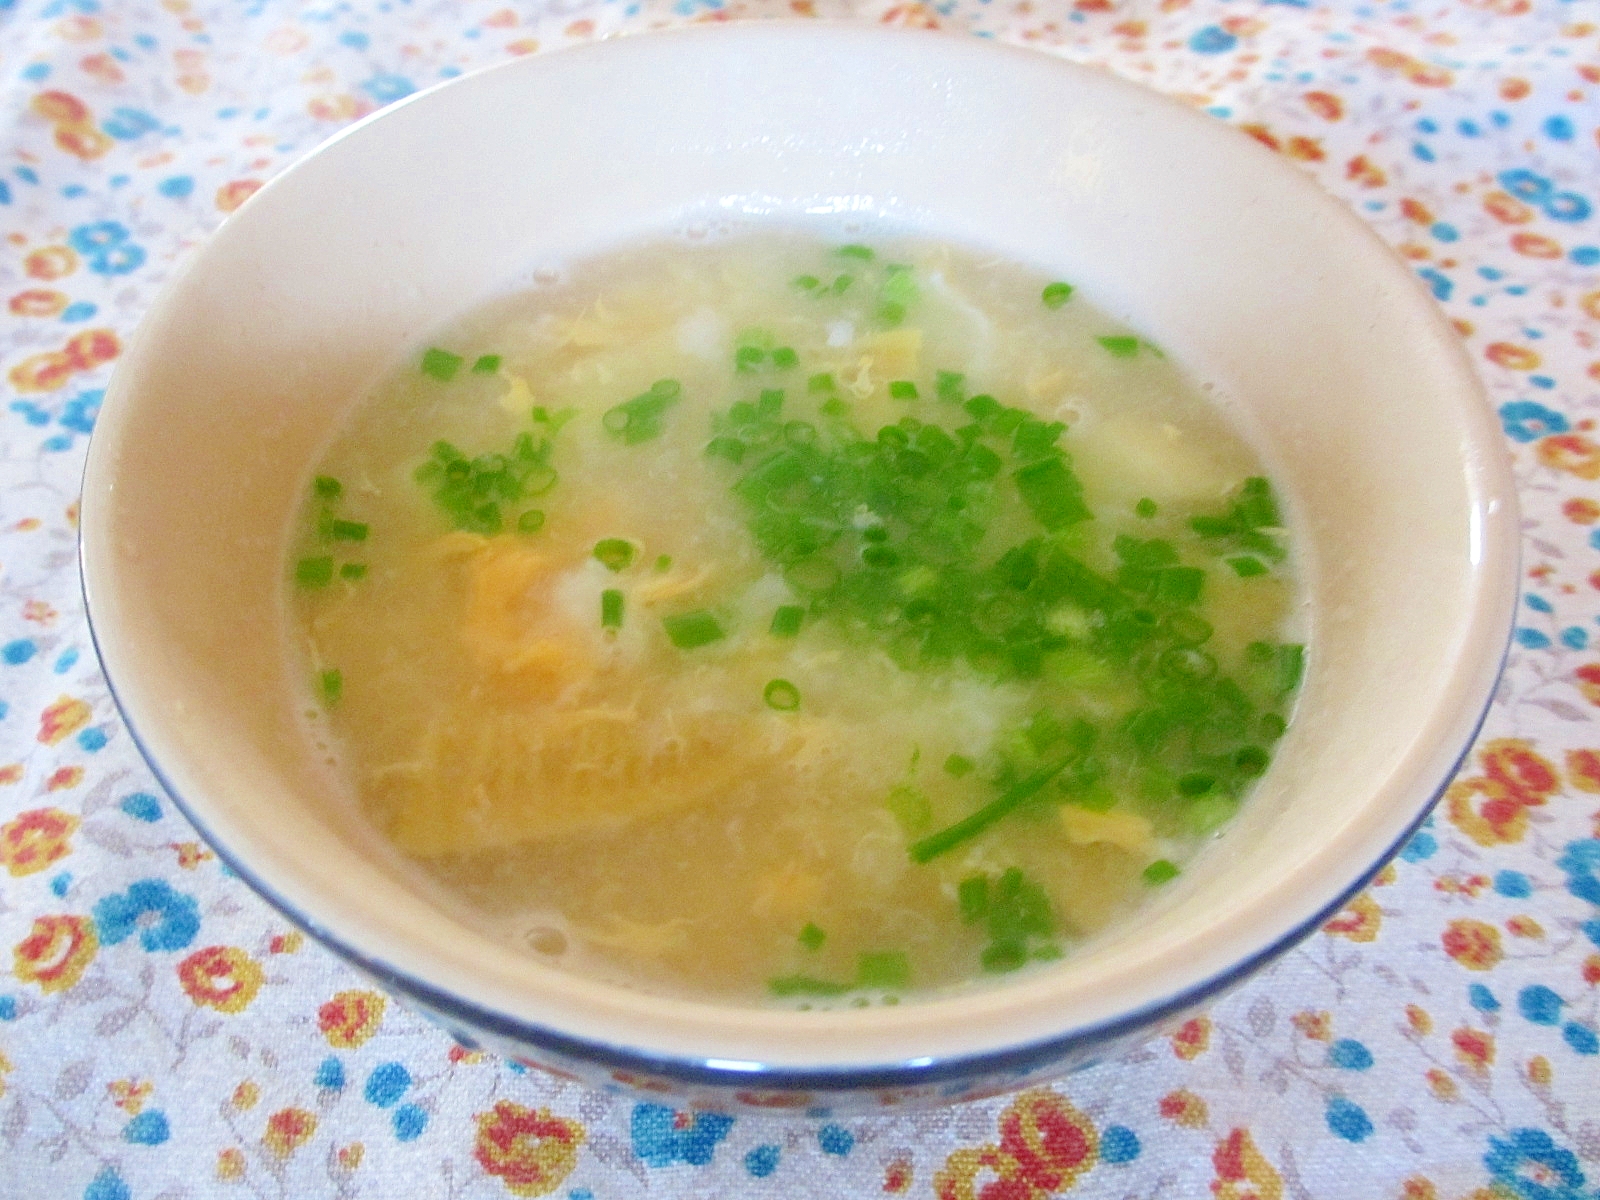 タケノコとお米の卵スープ